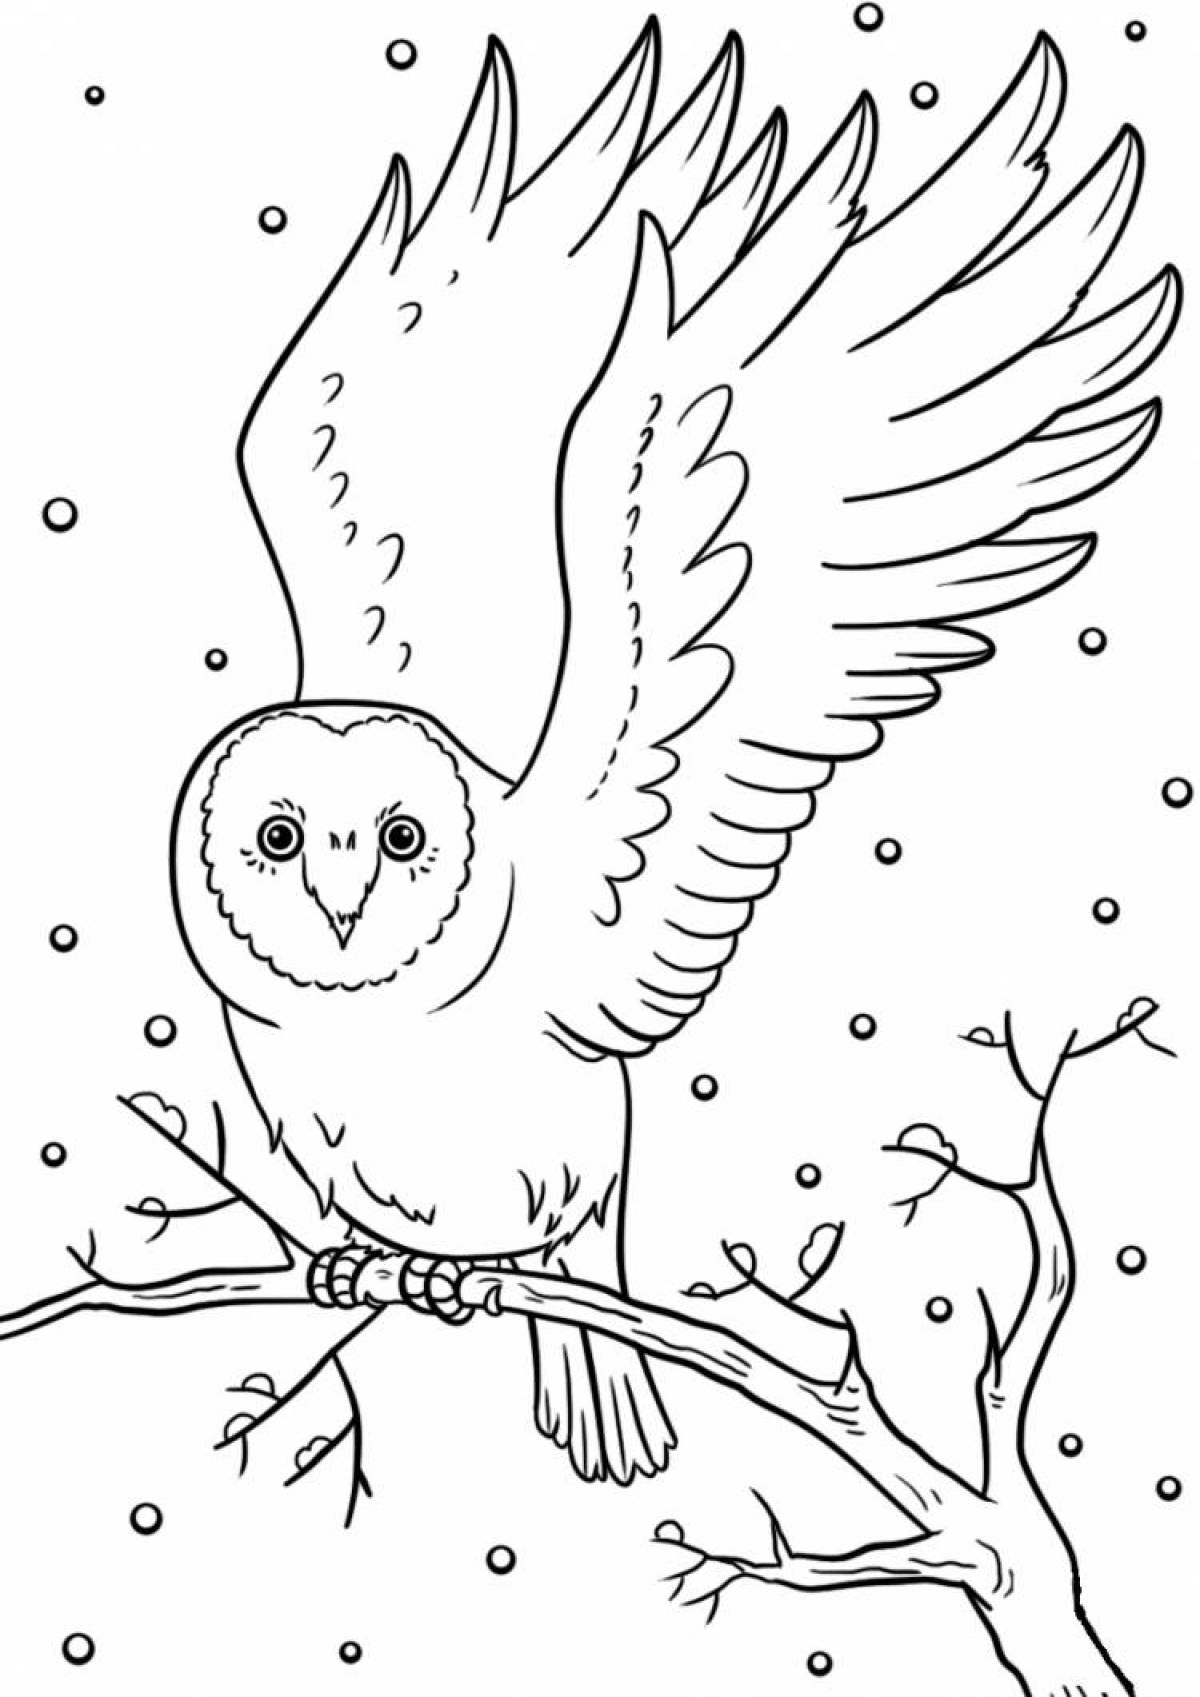 Великолепная раскраска зимующих птиц для детей 5-6 лет